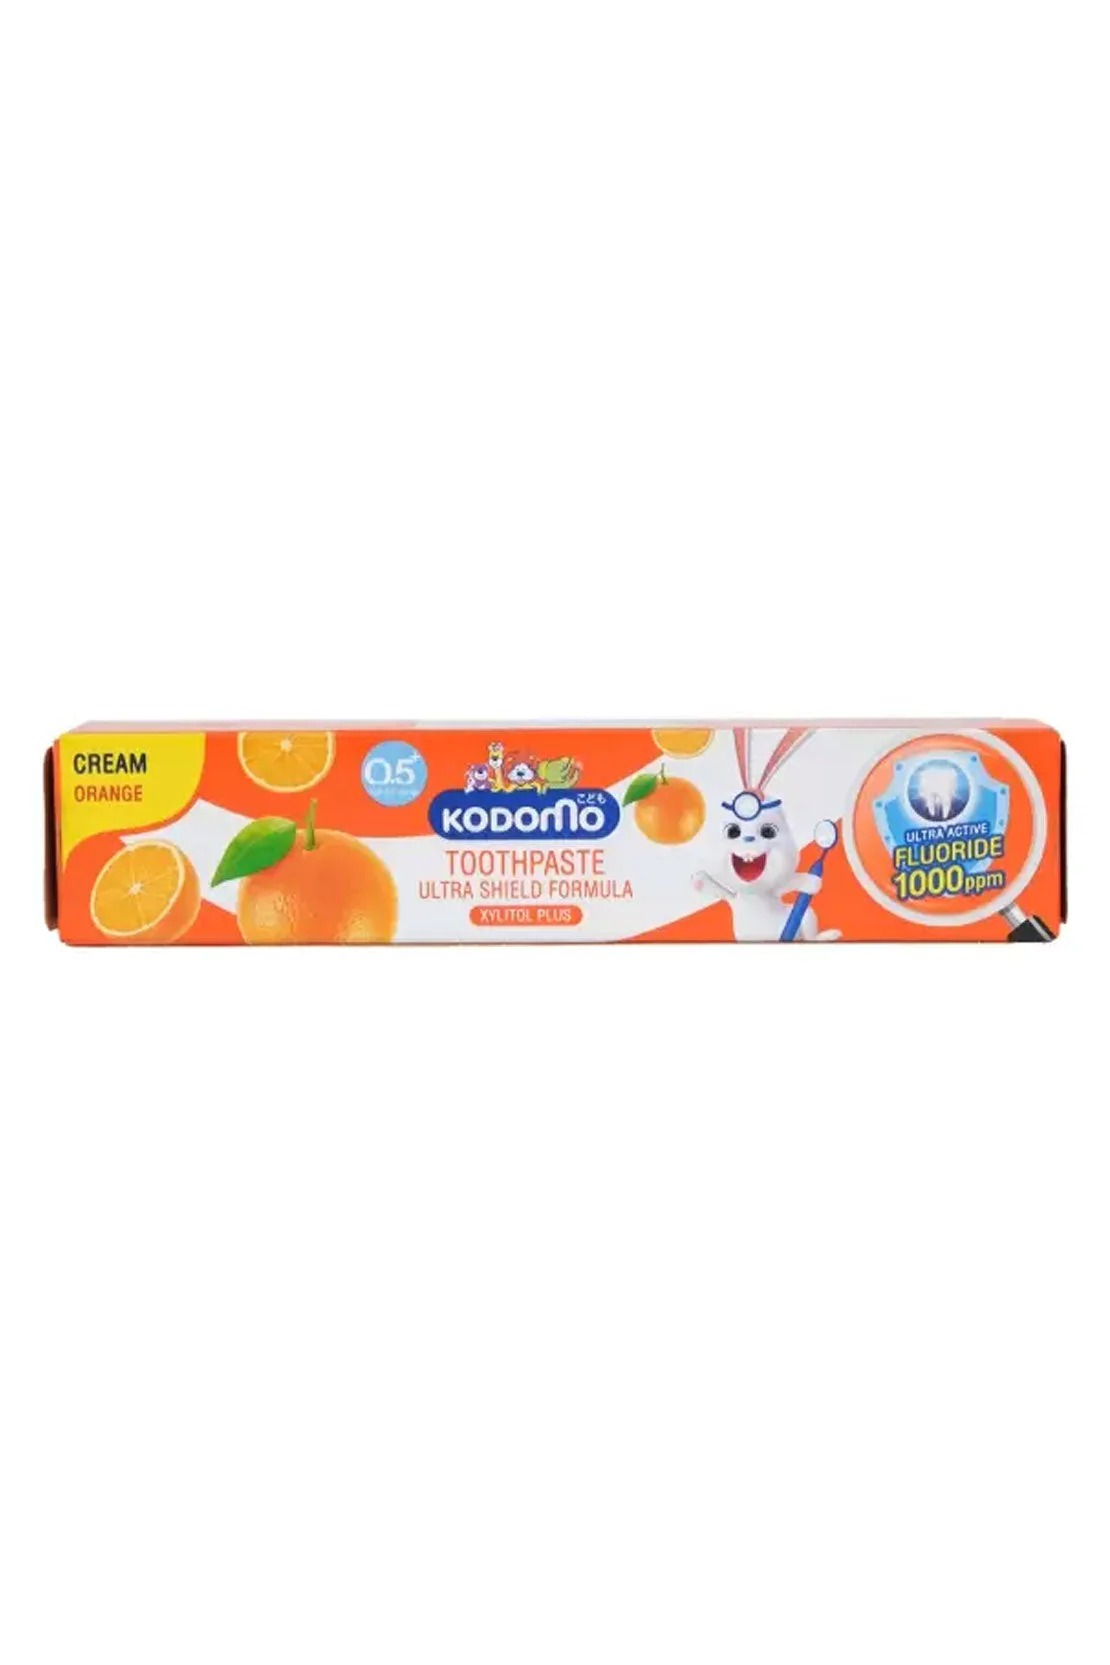 Orange 0.5 Yrs Cream Paste 40g